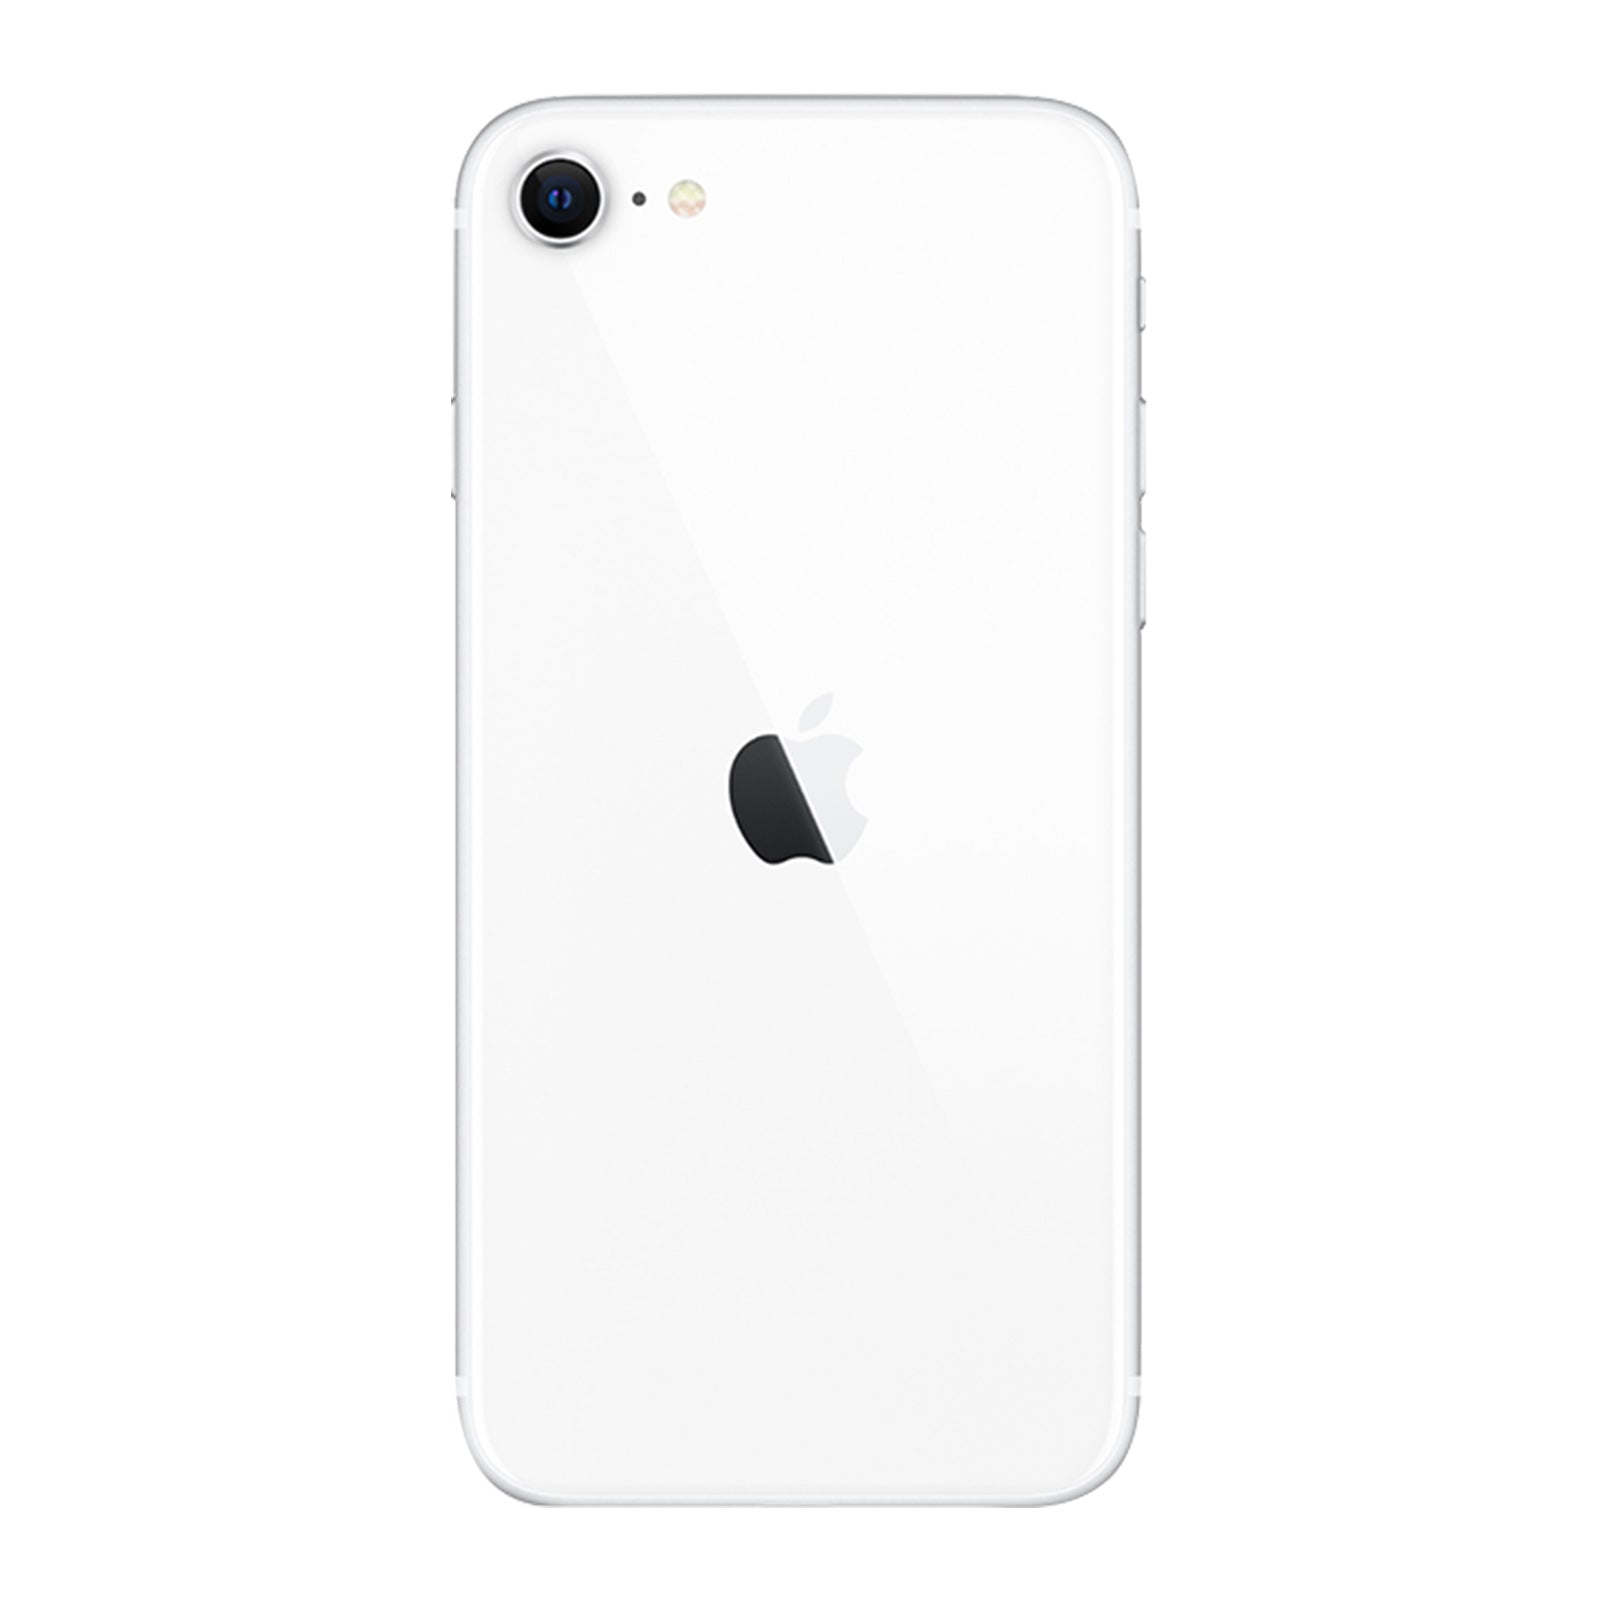 Apple iPhone SE 2nd Gen 64GB White Good Sprint